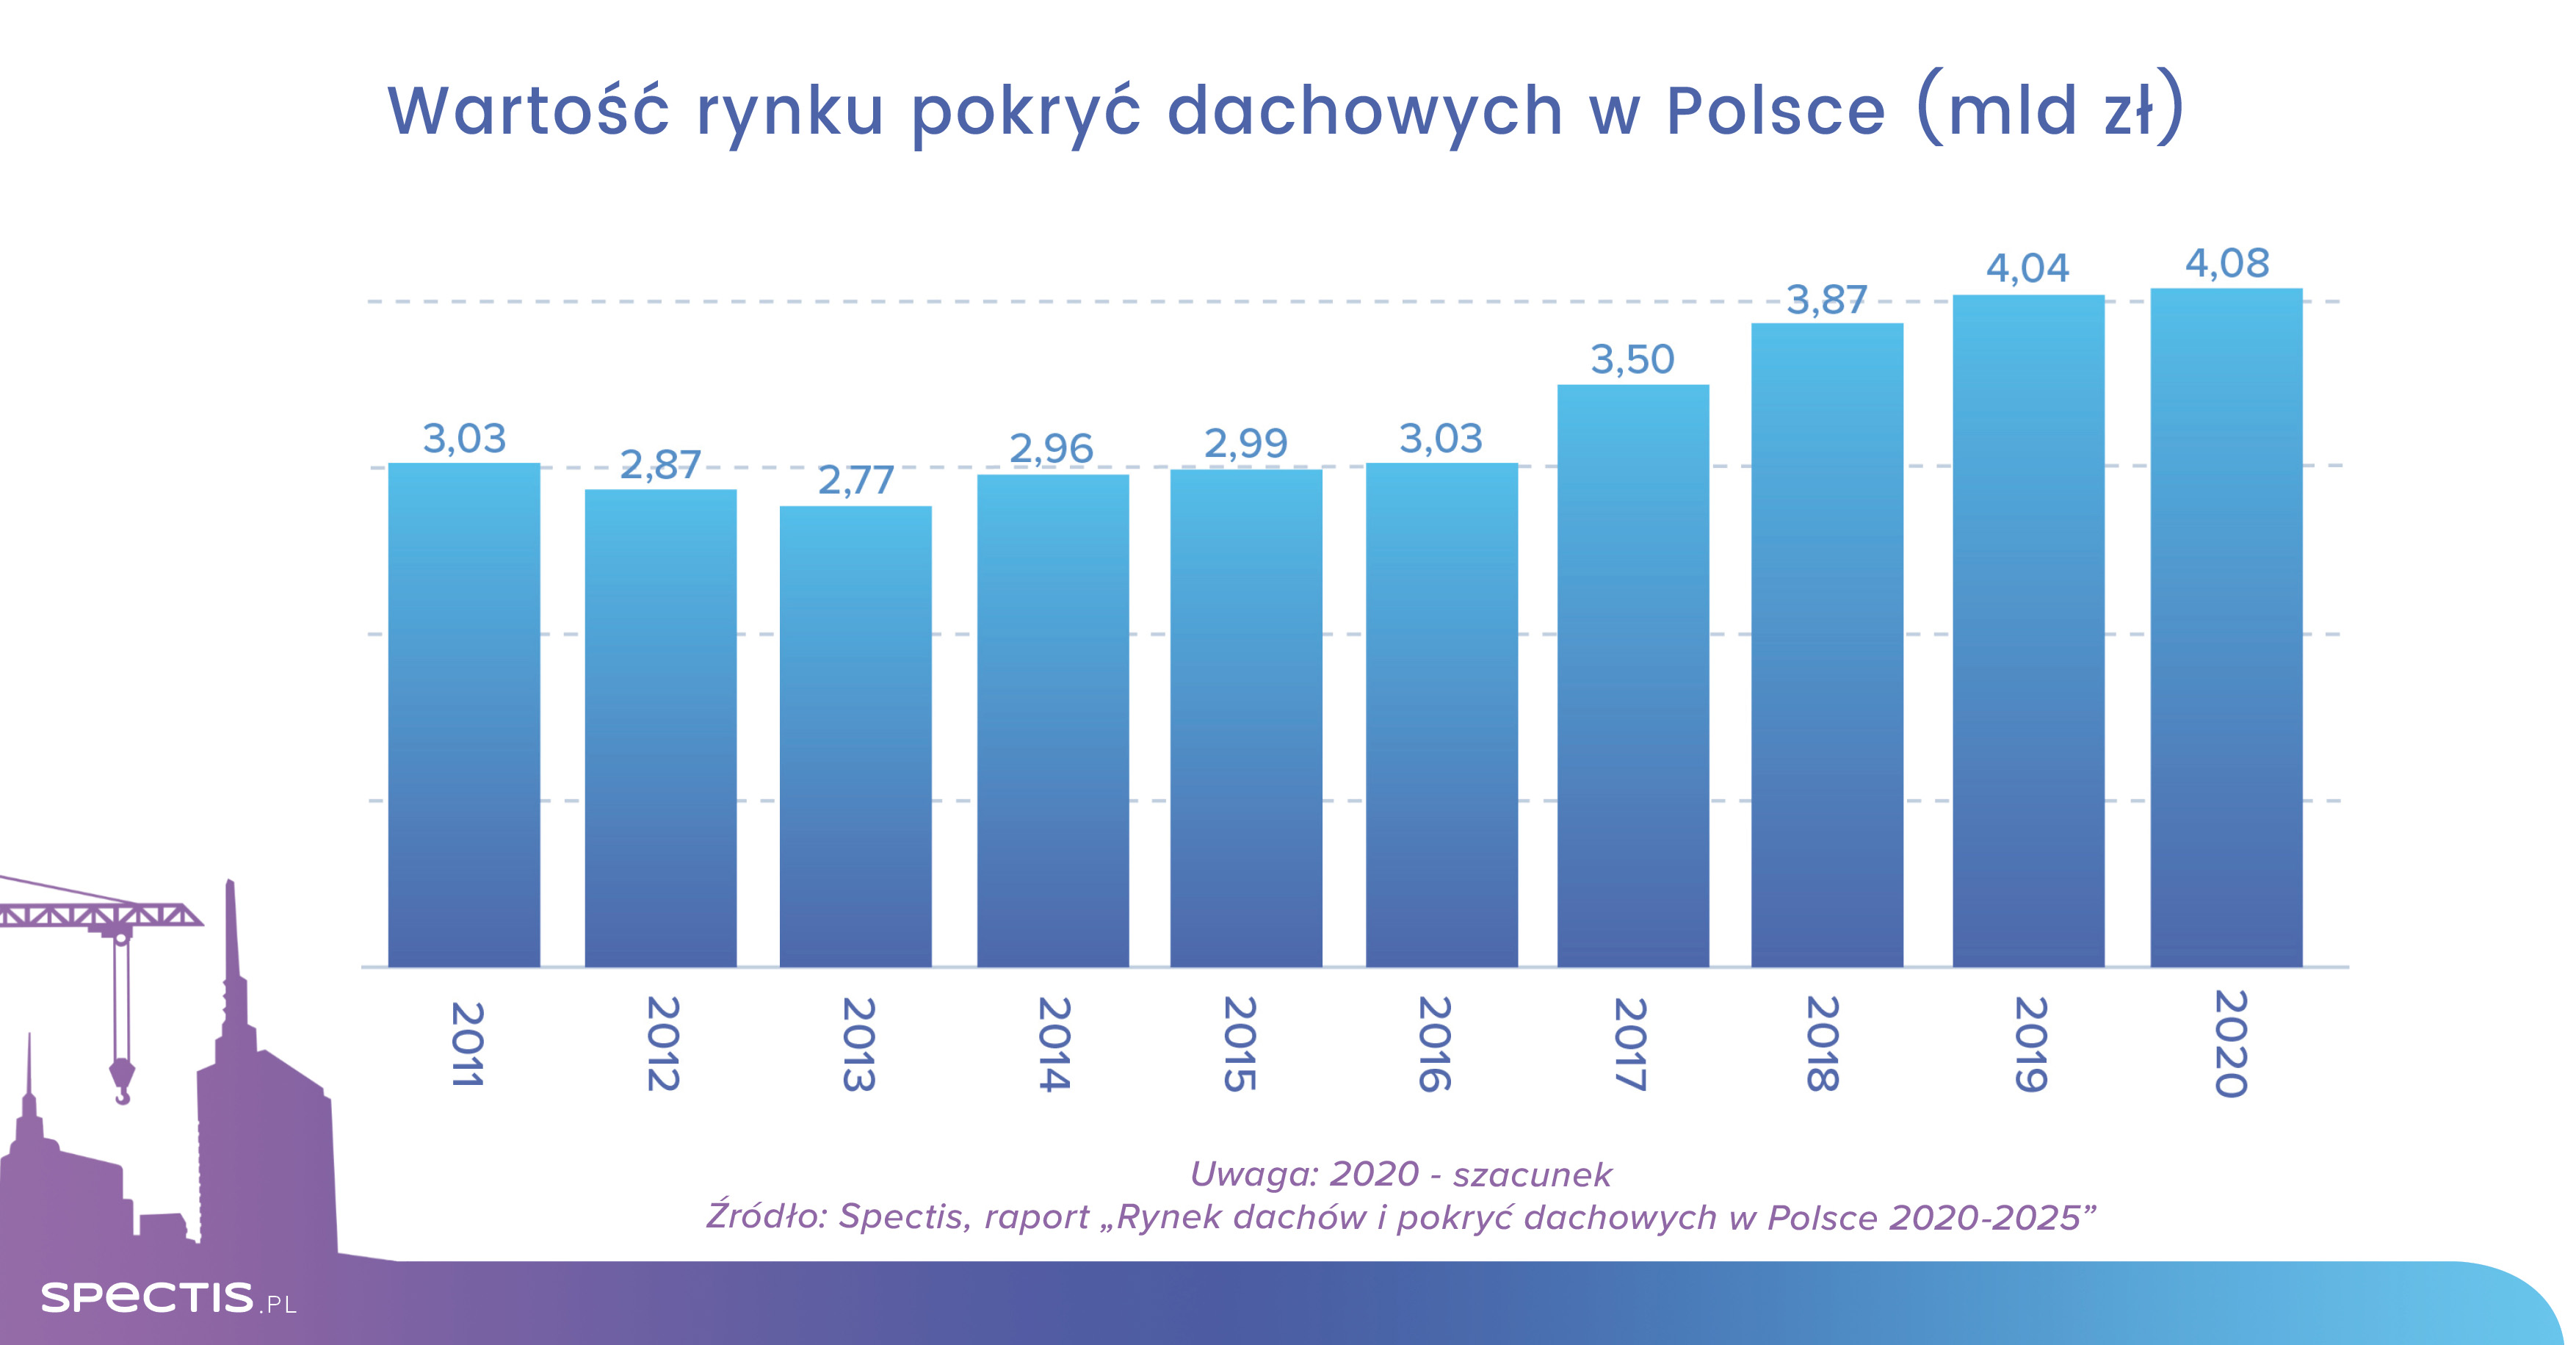 Wartość rynku pokryć dachowych w Polsce do 2025 r. sięgnie 4,4 mld zł